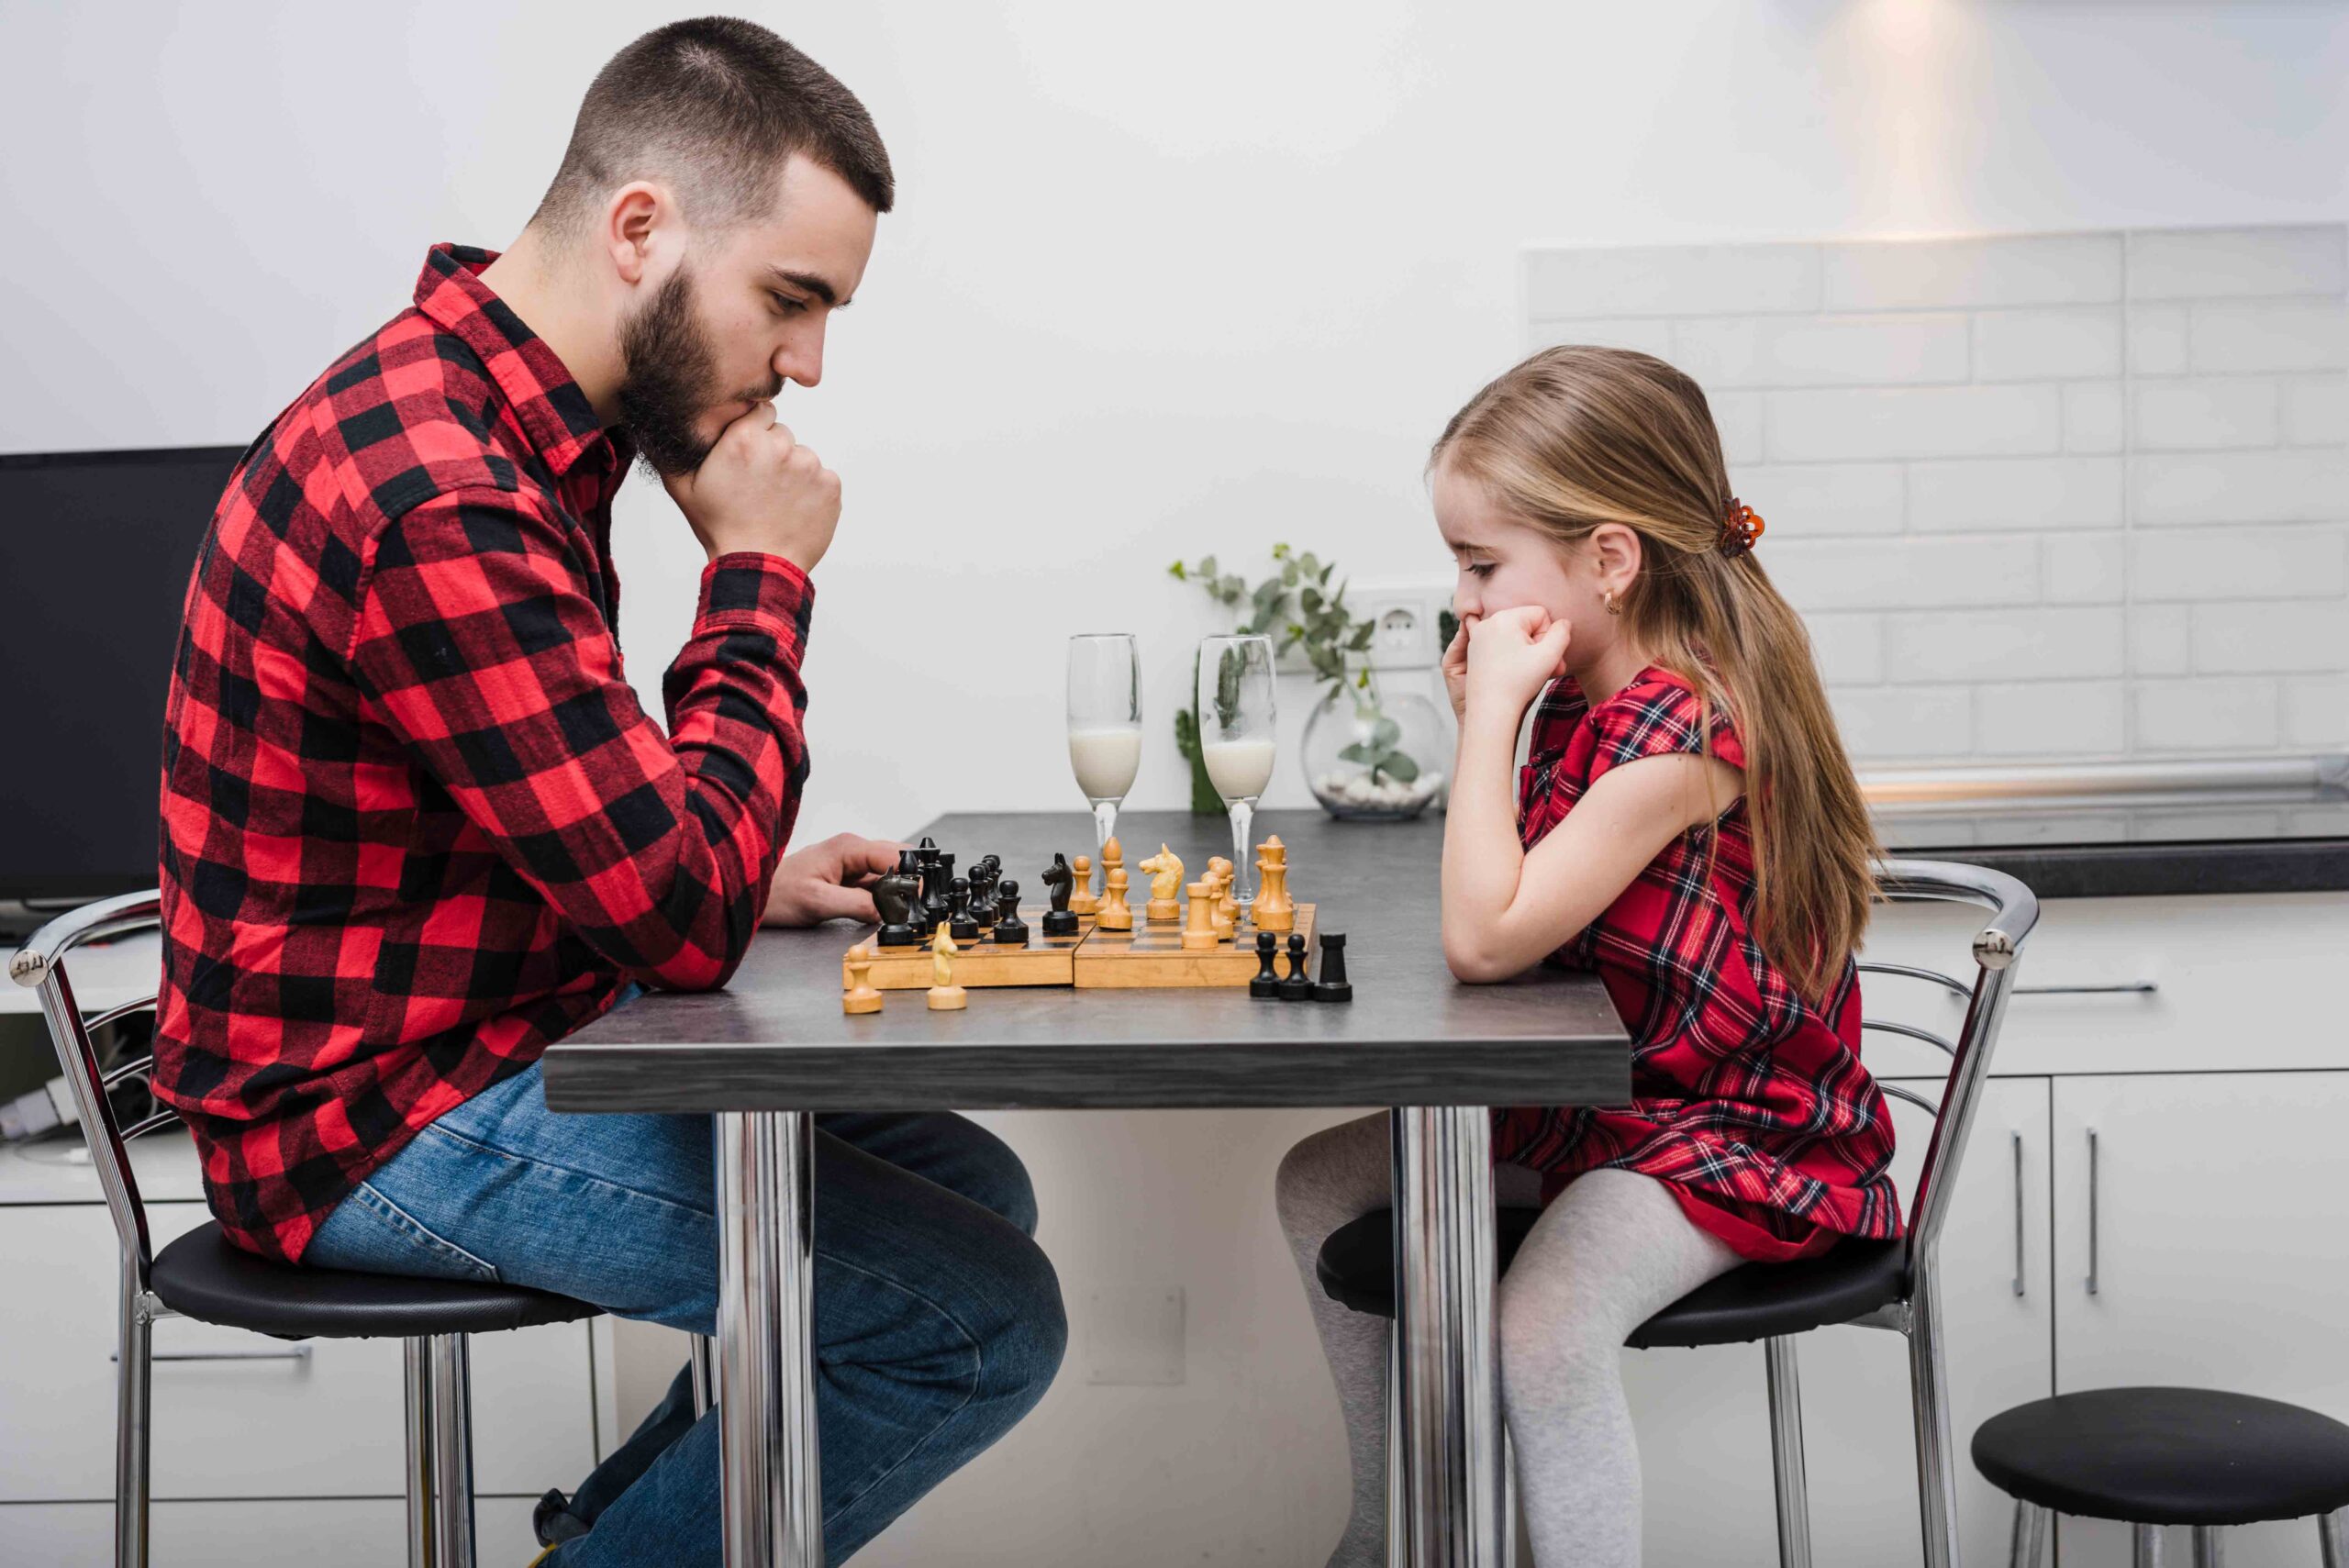 Папа играет в шахматы. Отец и дочь играют в шахматы. Шахматы для детей. Папа с дочкой играют в шахматы. Семейная игра в шахматы.